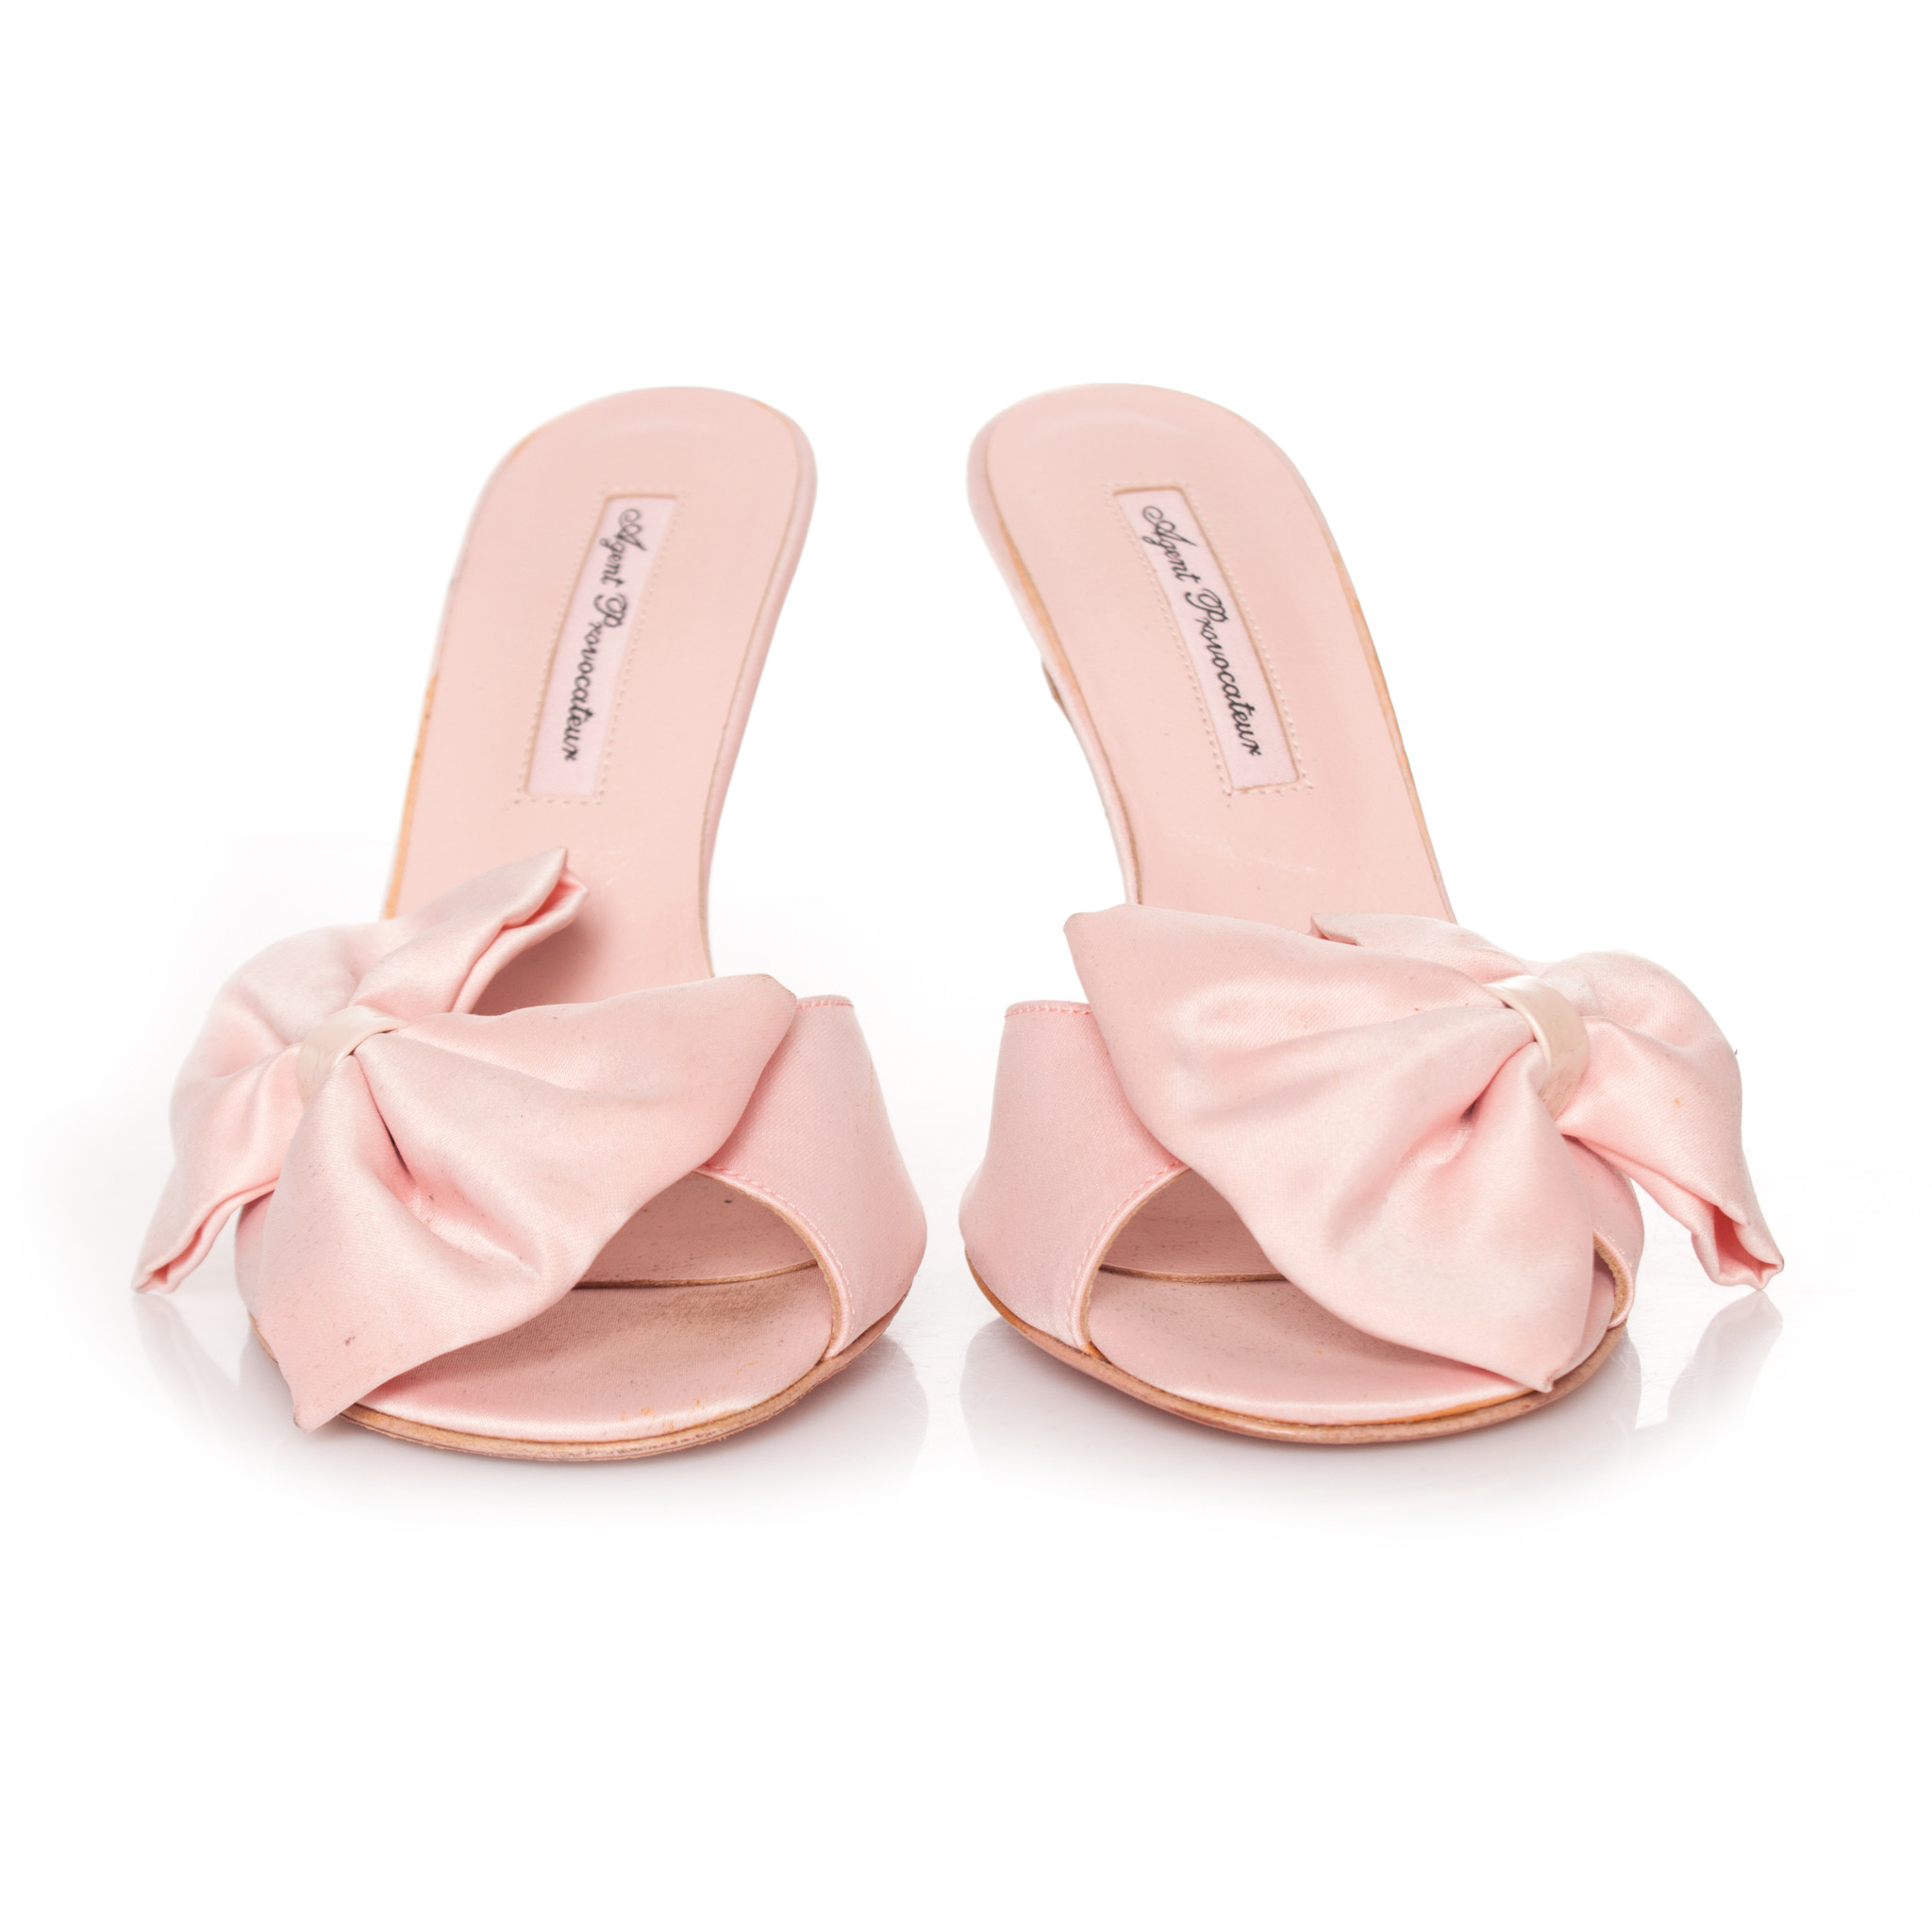 Agent Pink sandals with bow. - Unique Designer Pieces